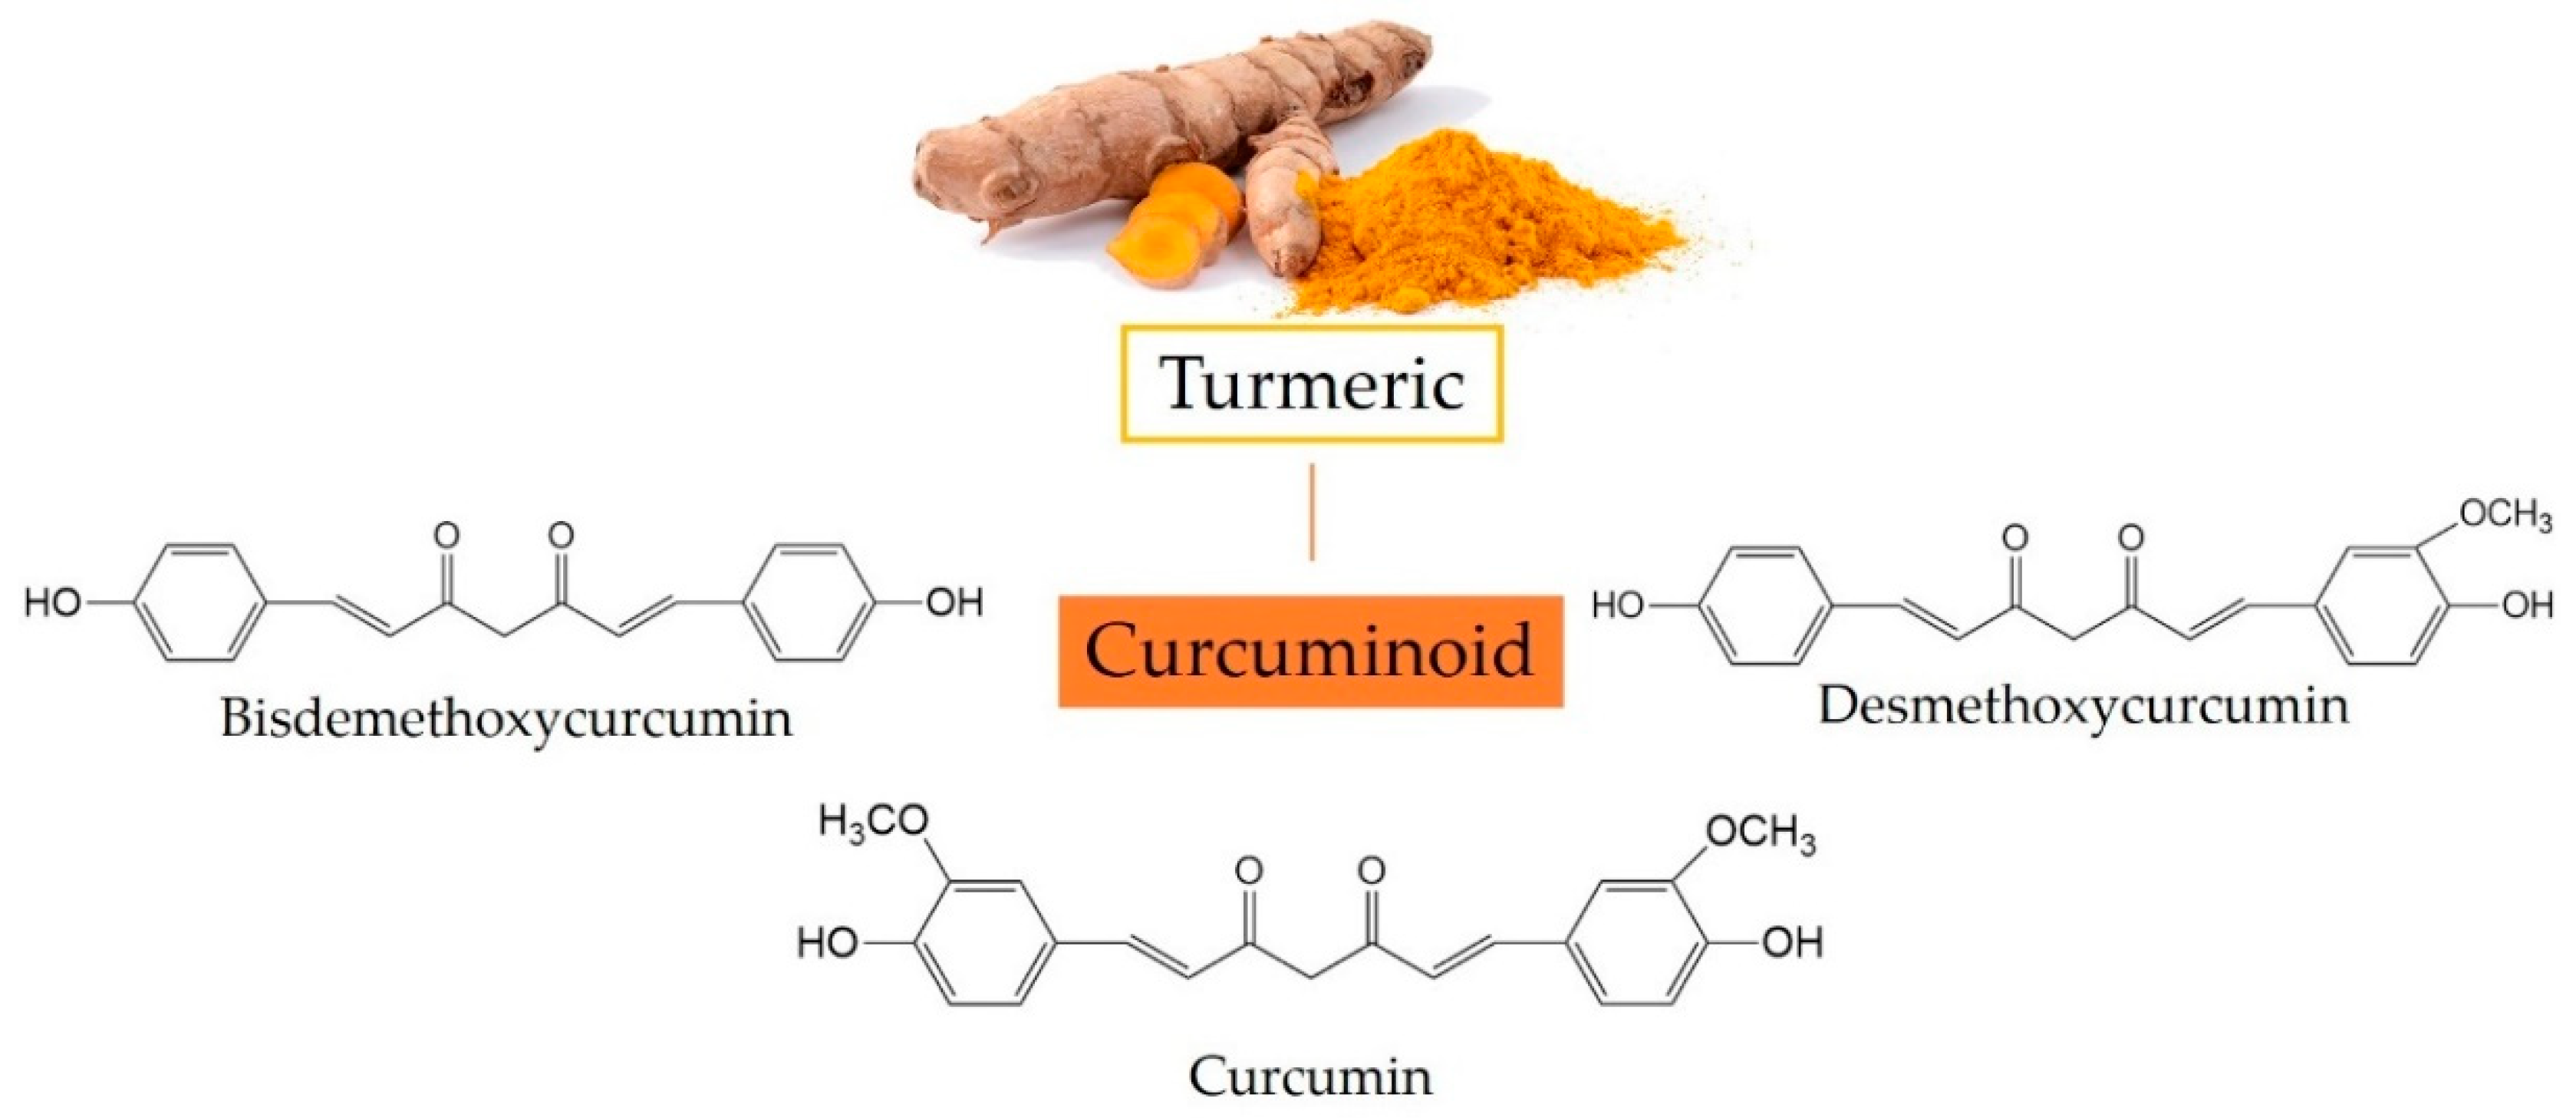 Curcuminoids